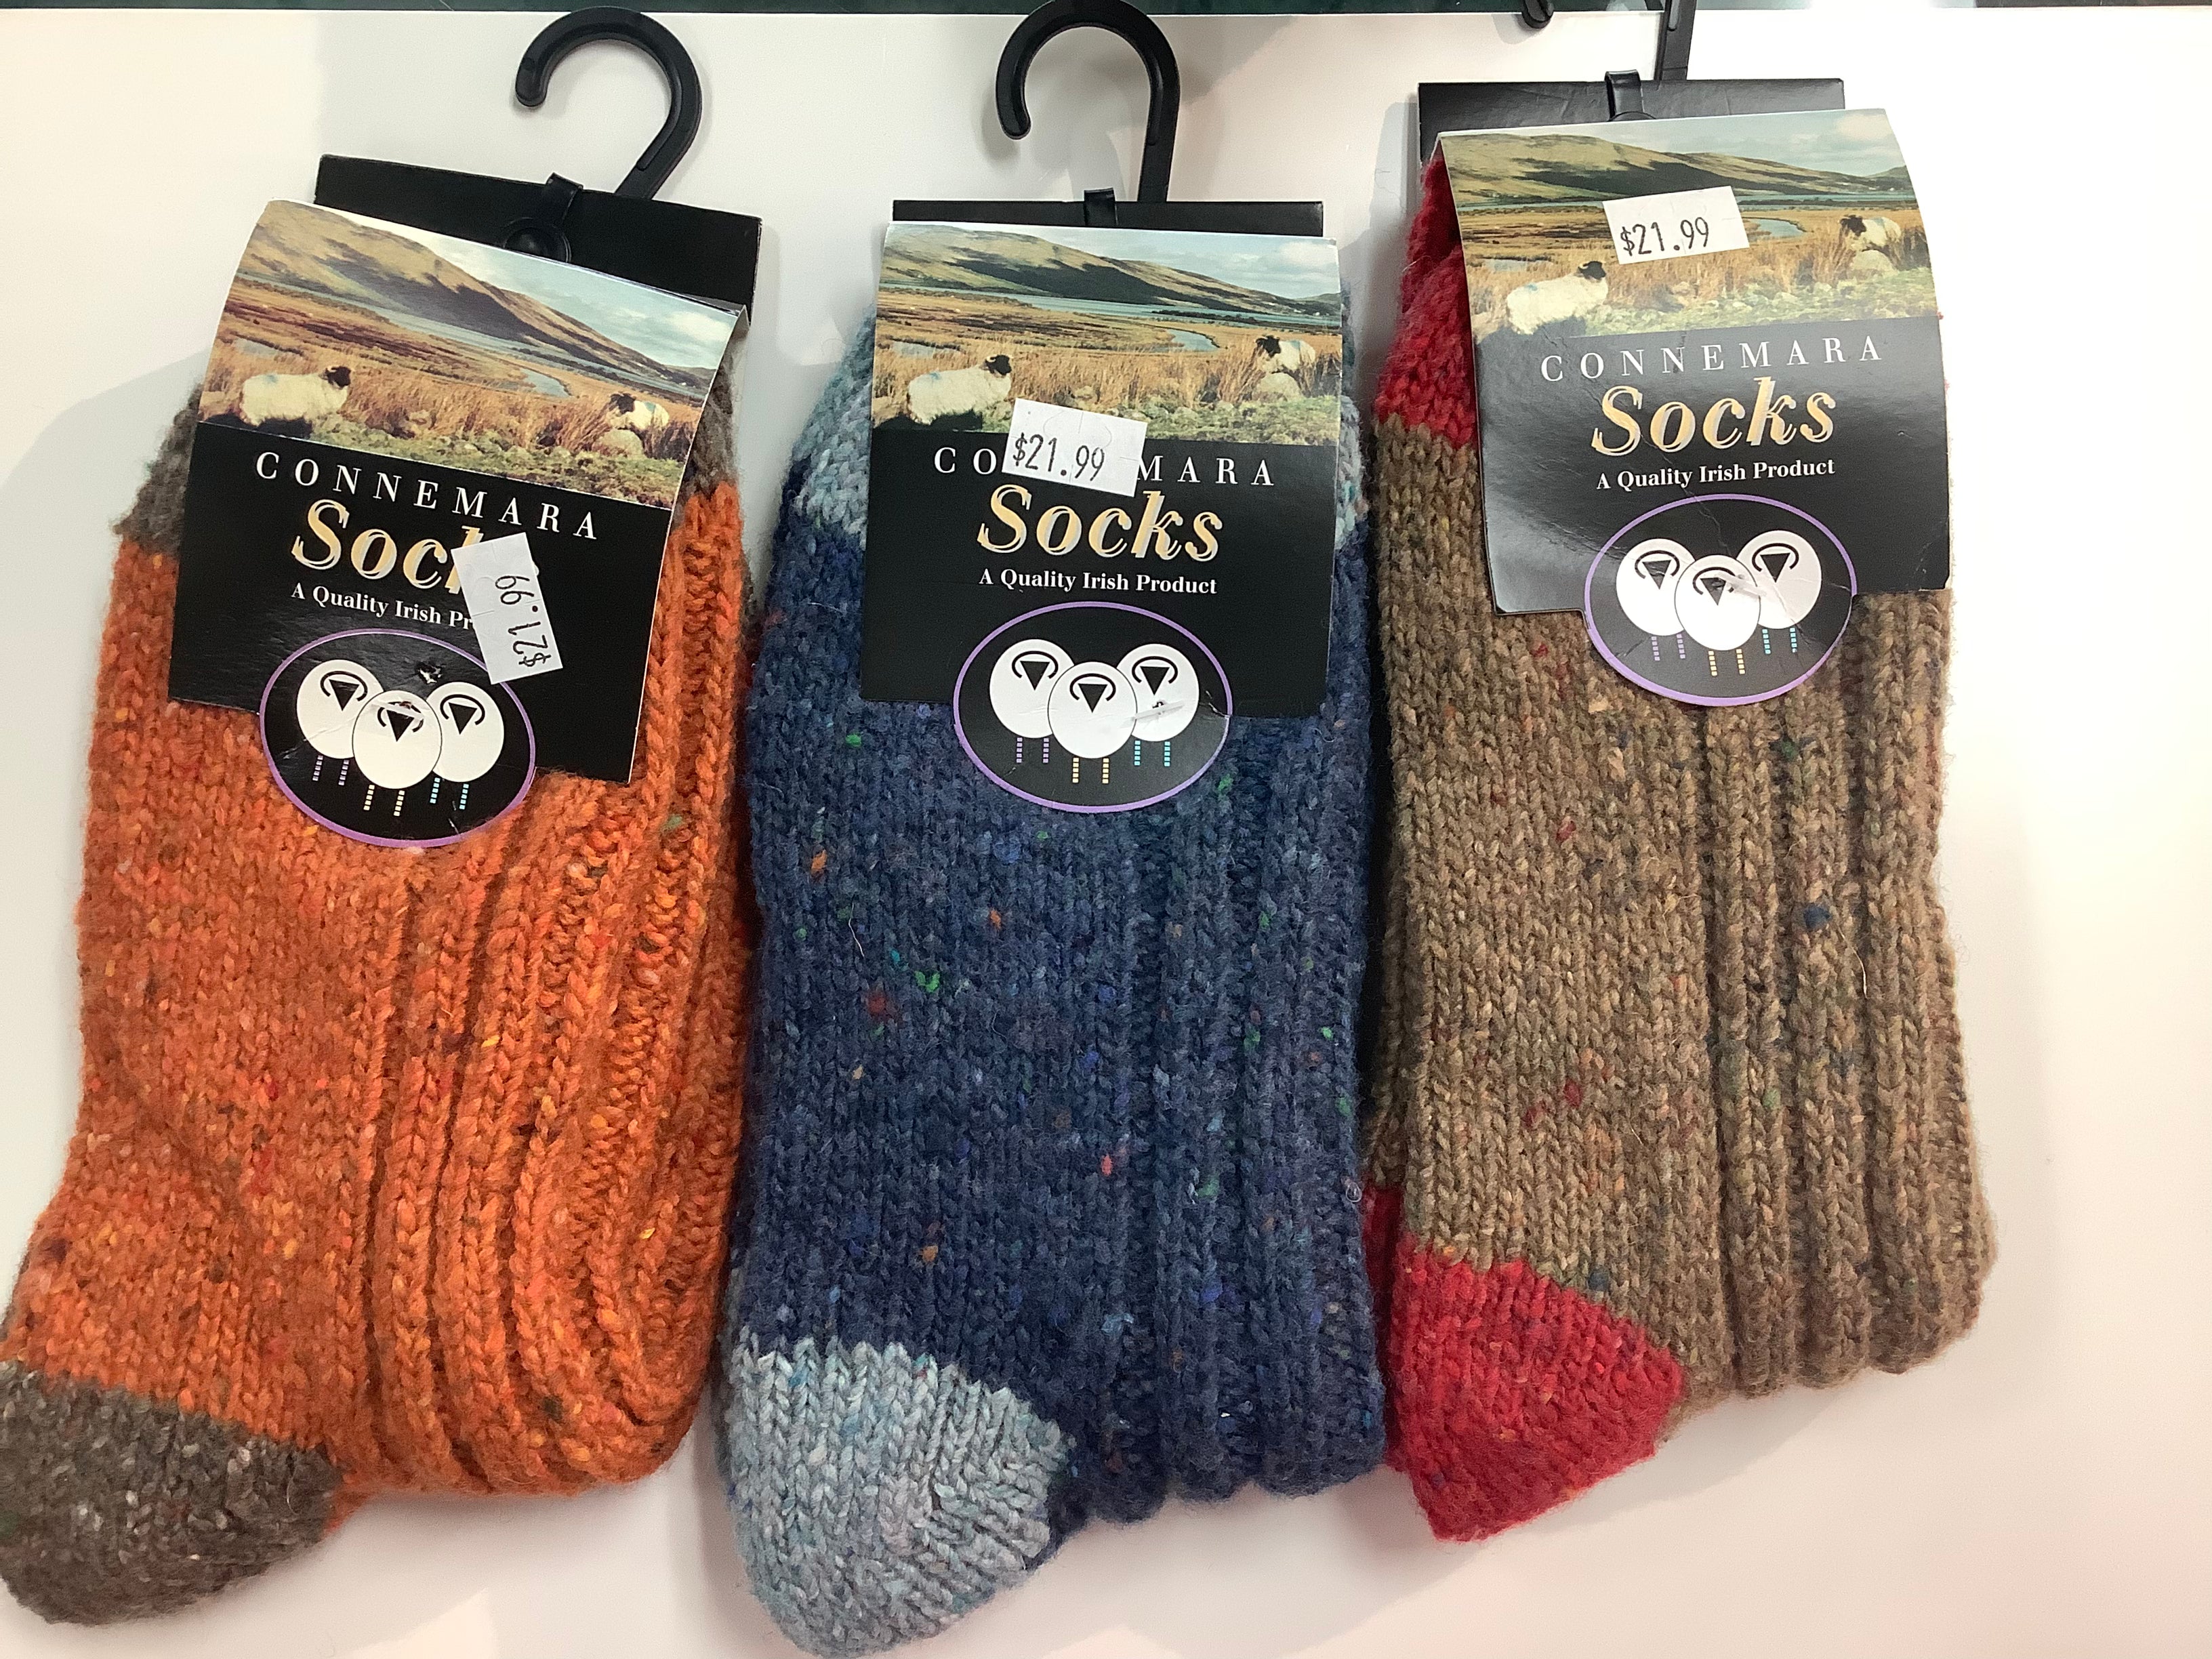 Connemara flecks socks